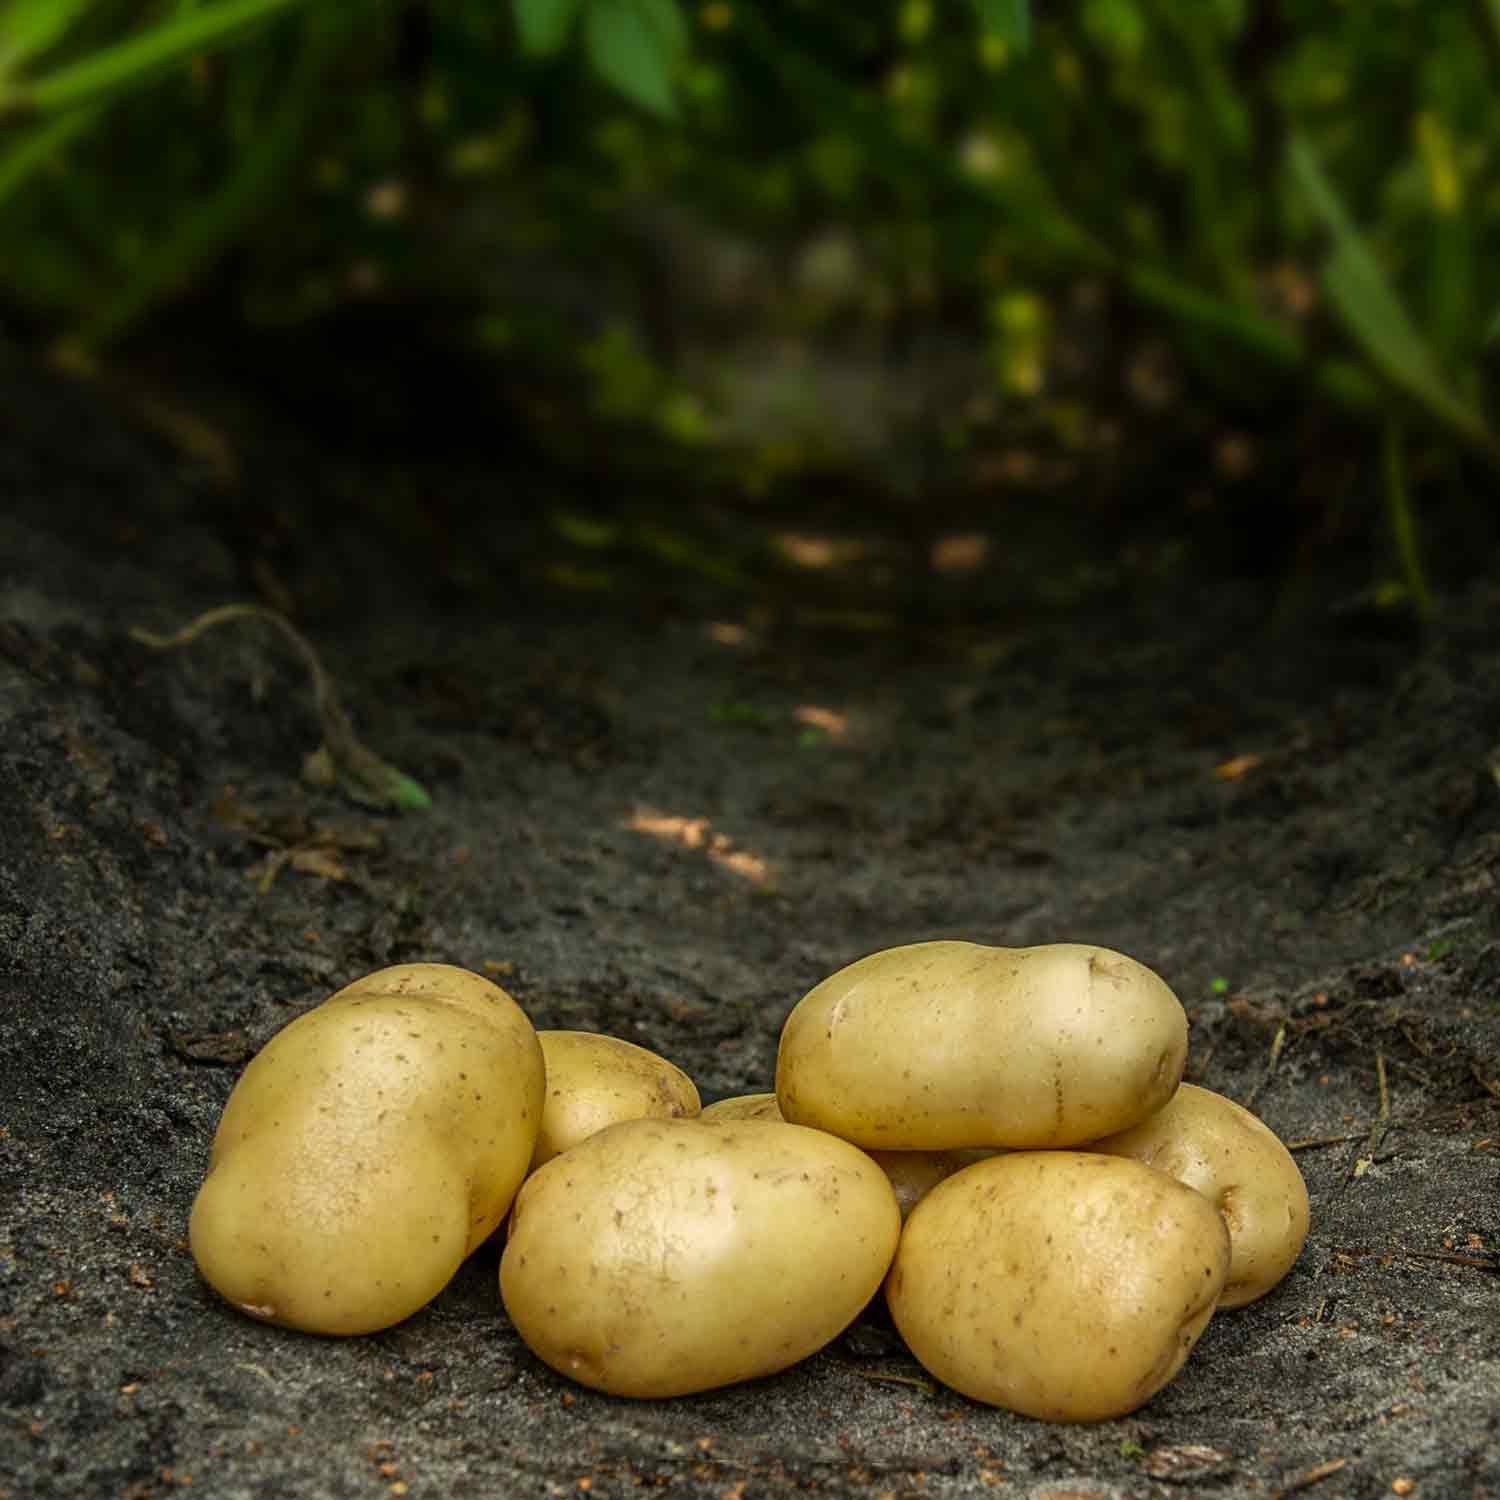 Bintje læggekartofler gammel dansk sort